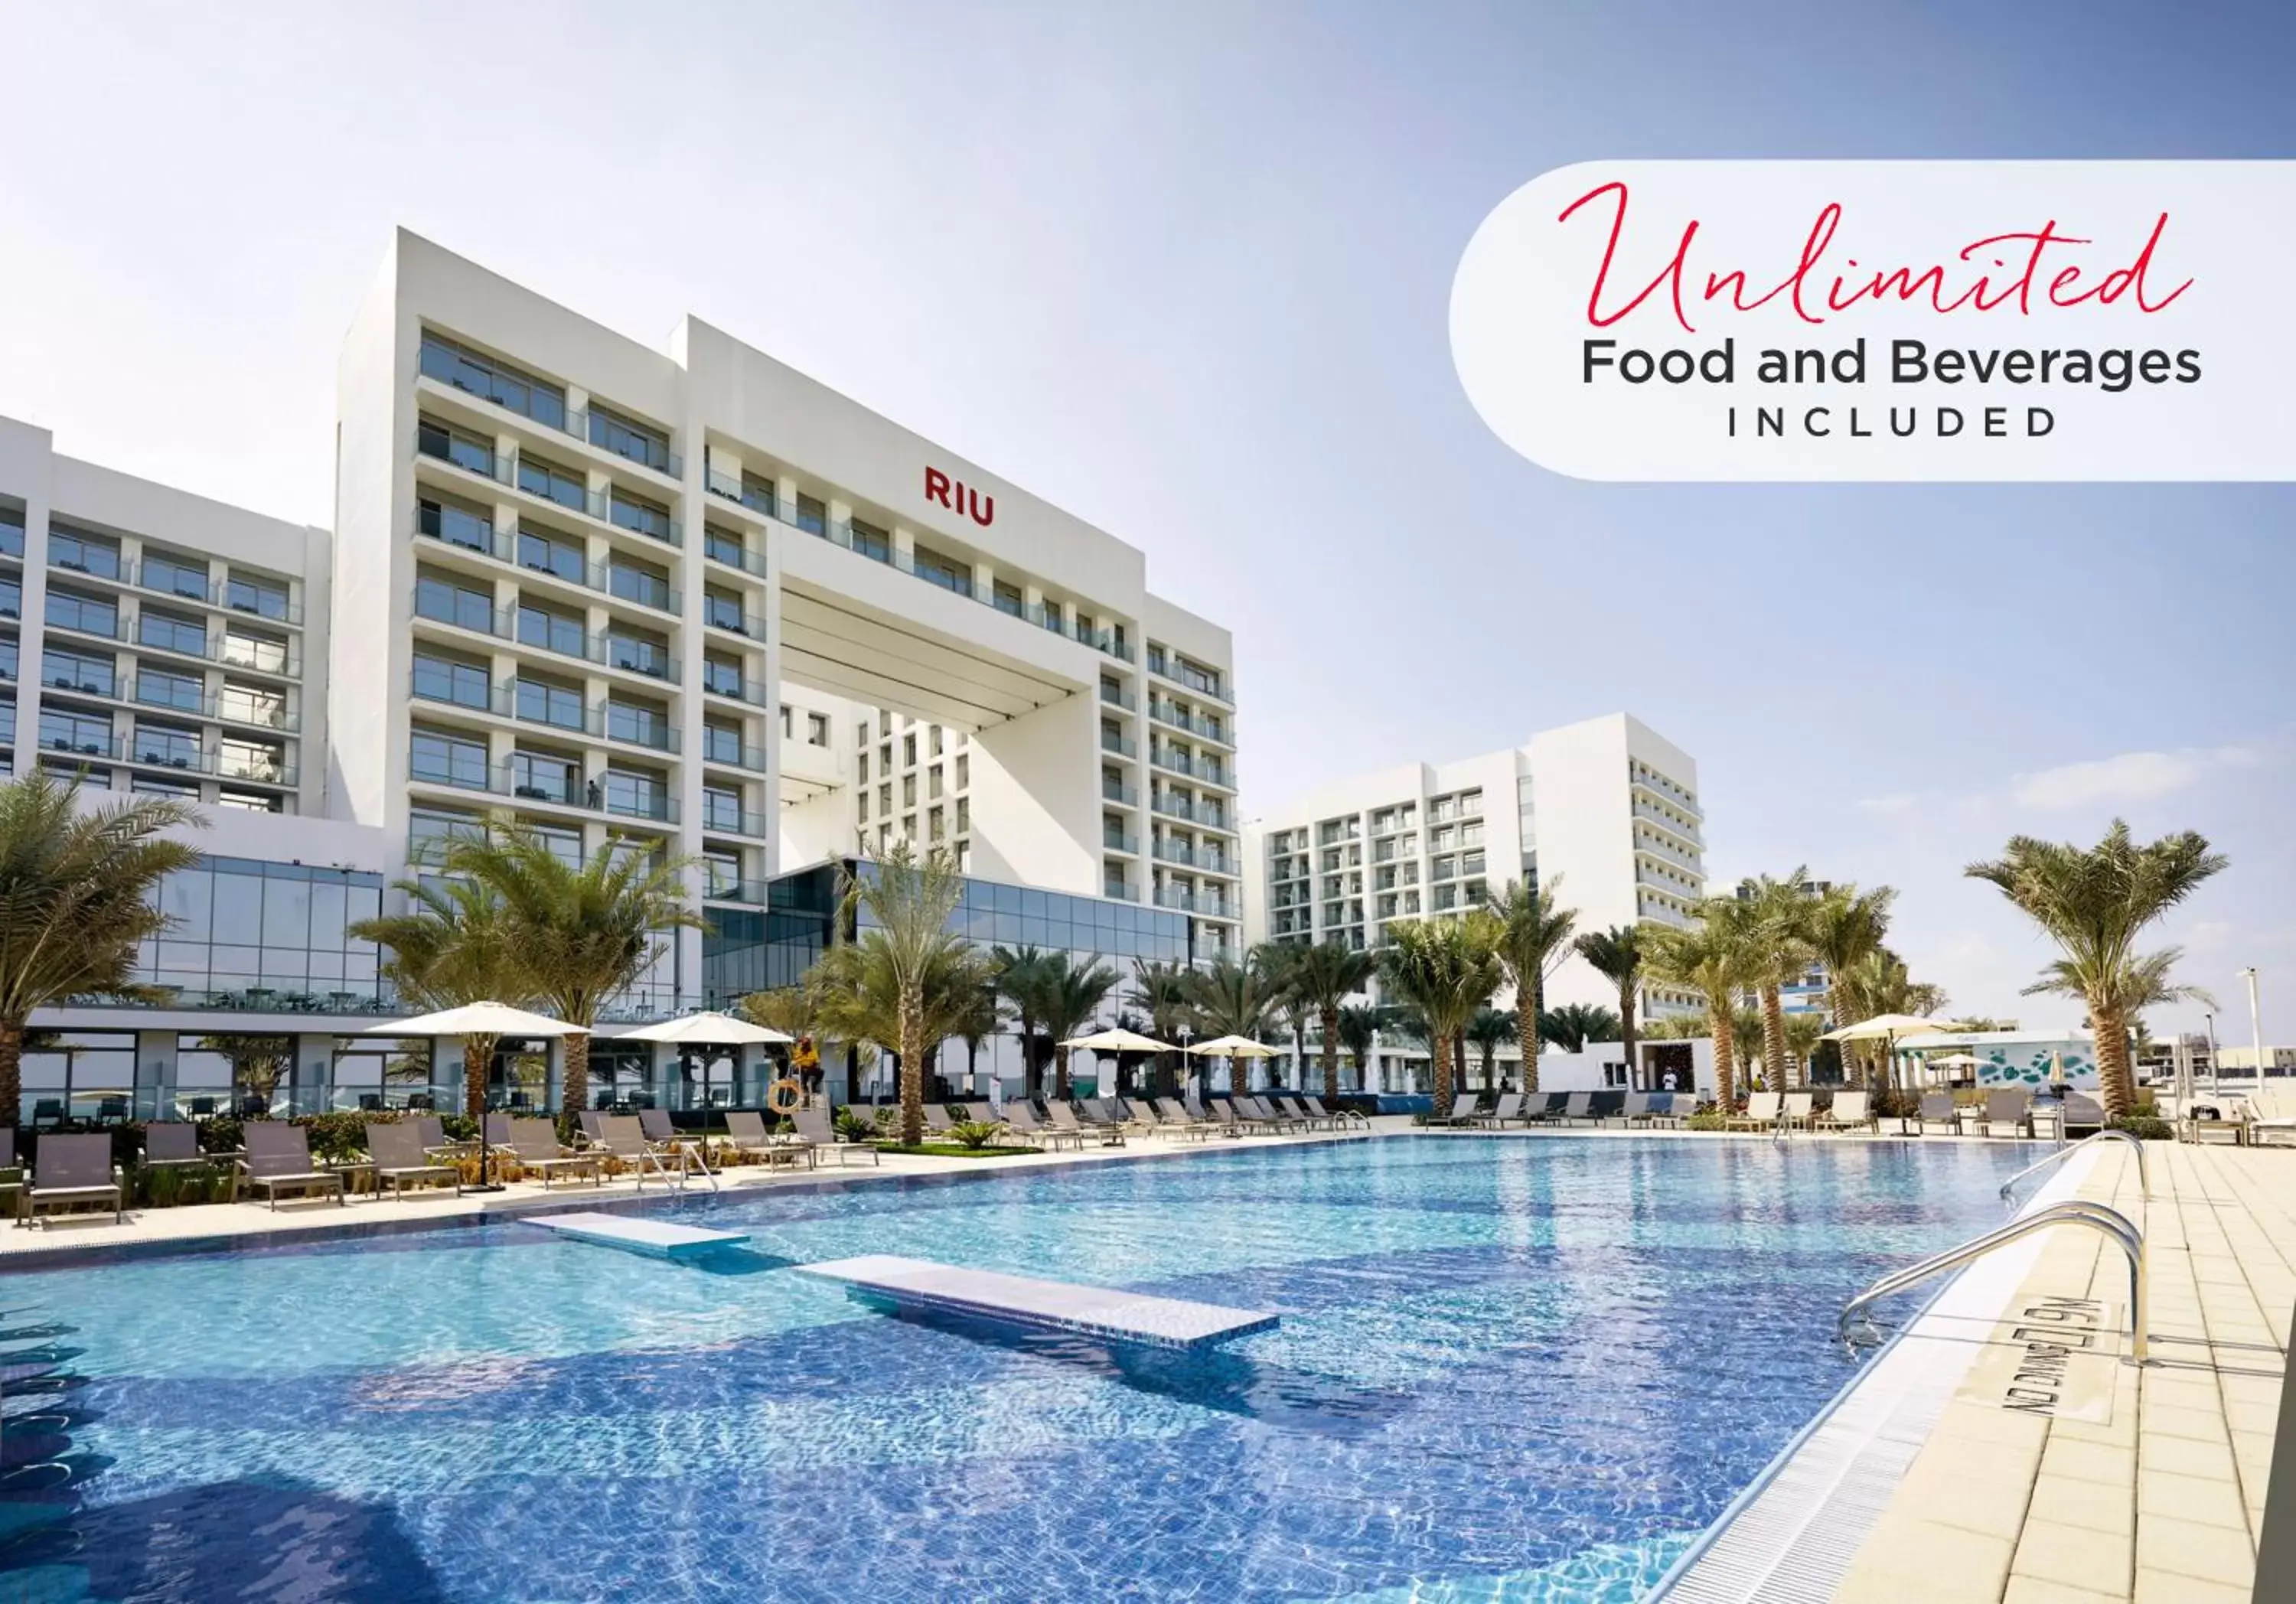 Property building in Riu Dubai Beach Resort - All Inclusive